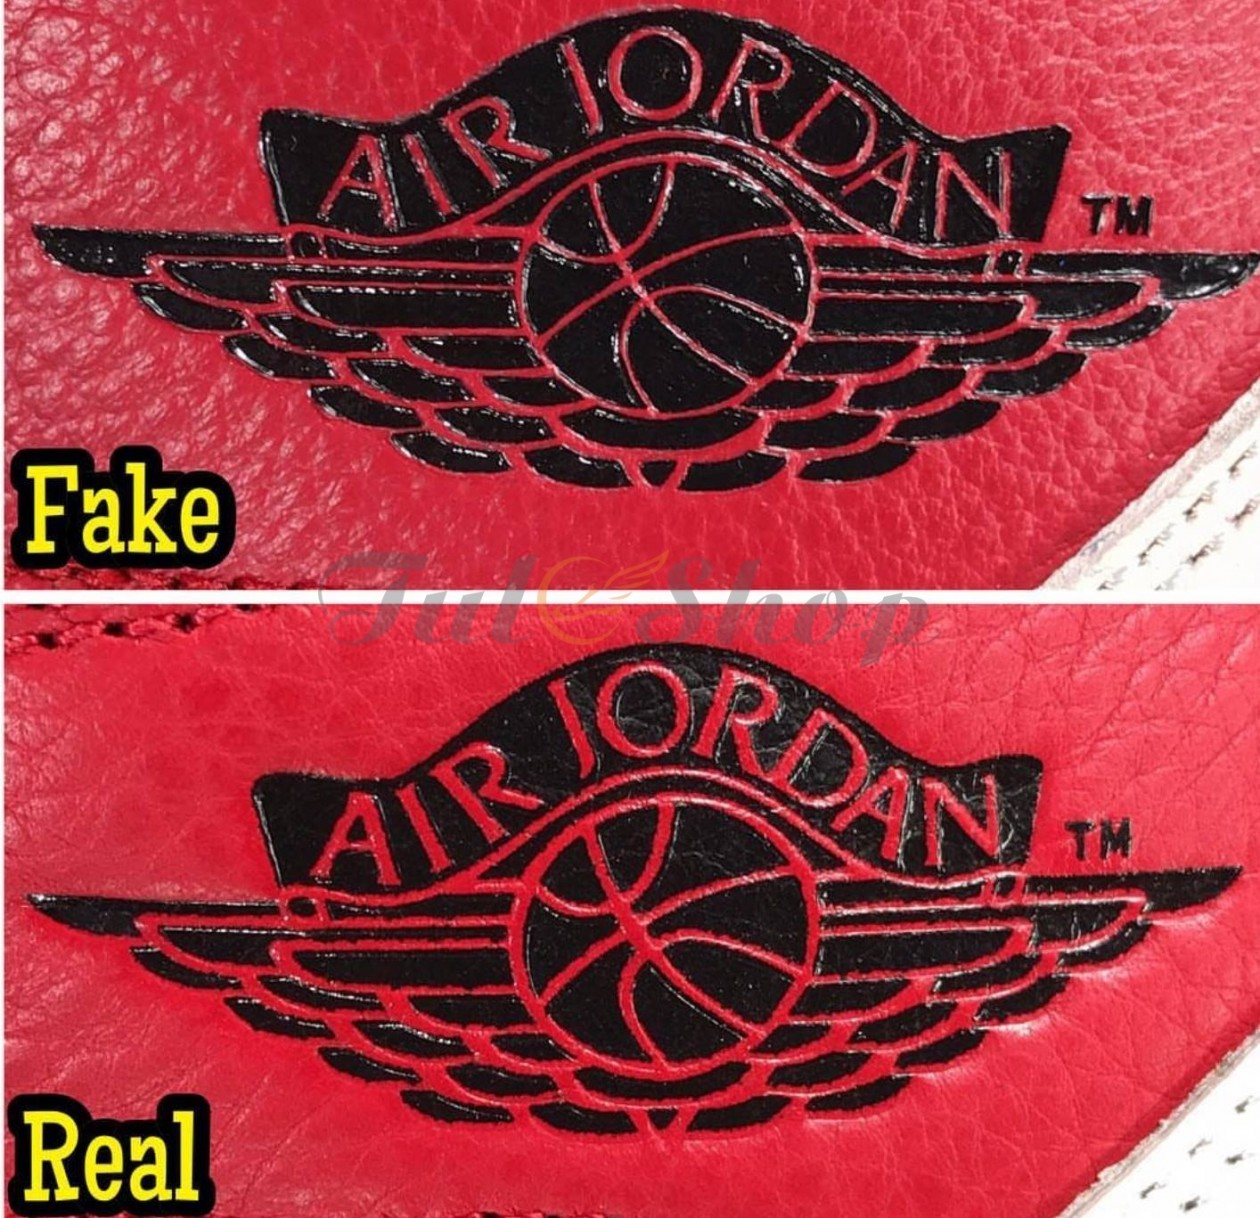 Cách check giày Jordan Real - Fake chuẩn và chính xác nhất